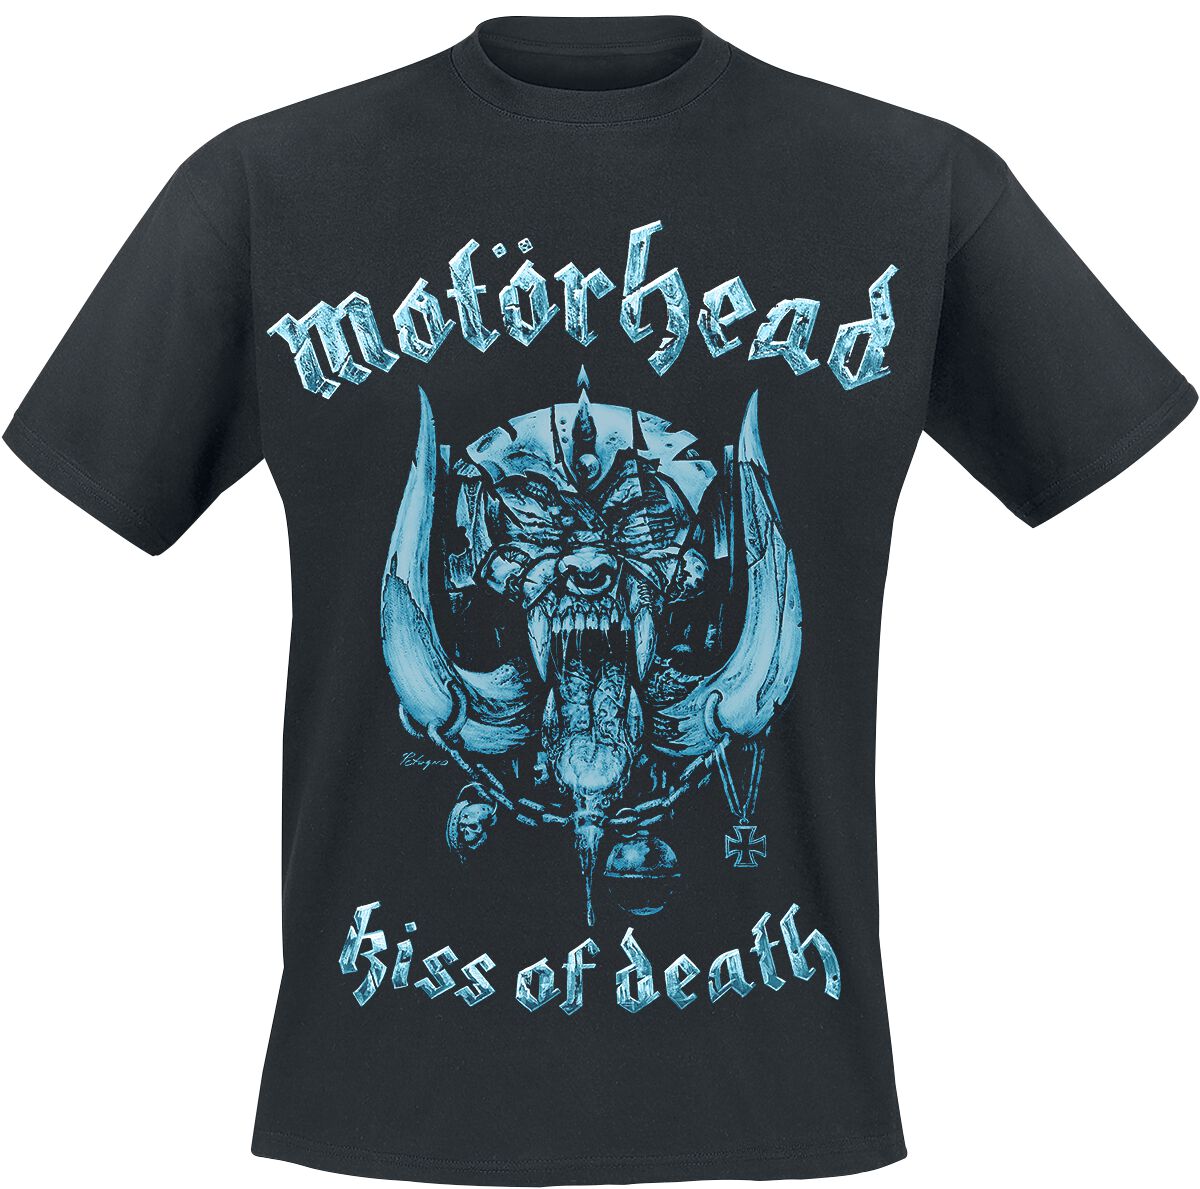 Motörhead T-Shirt - Kiss Of Death Warpig Cut Out - S bis XXL - für Männer - Größe M - schwarz  - Lizenziertes Merchandise!